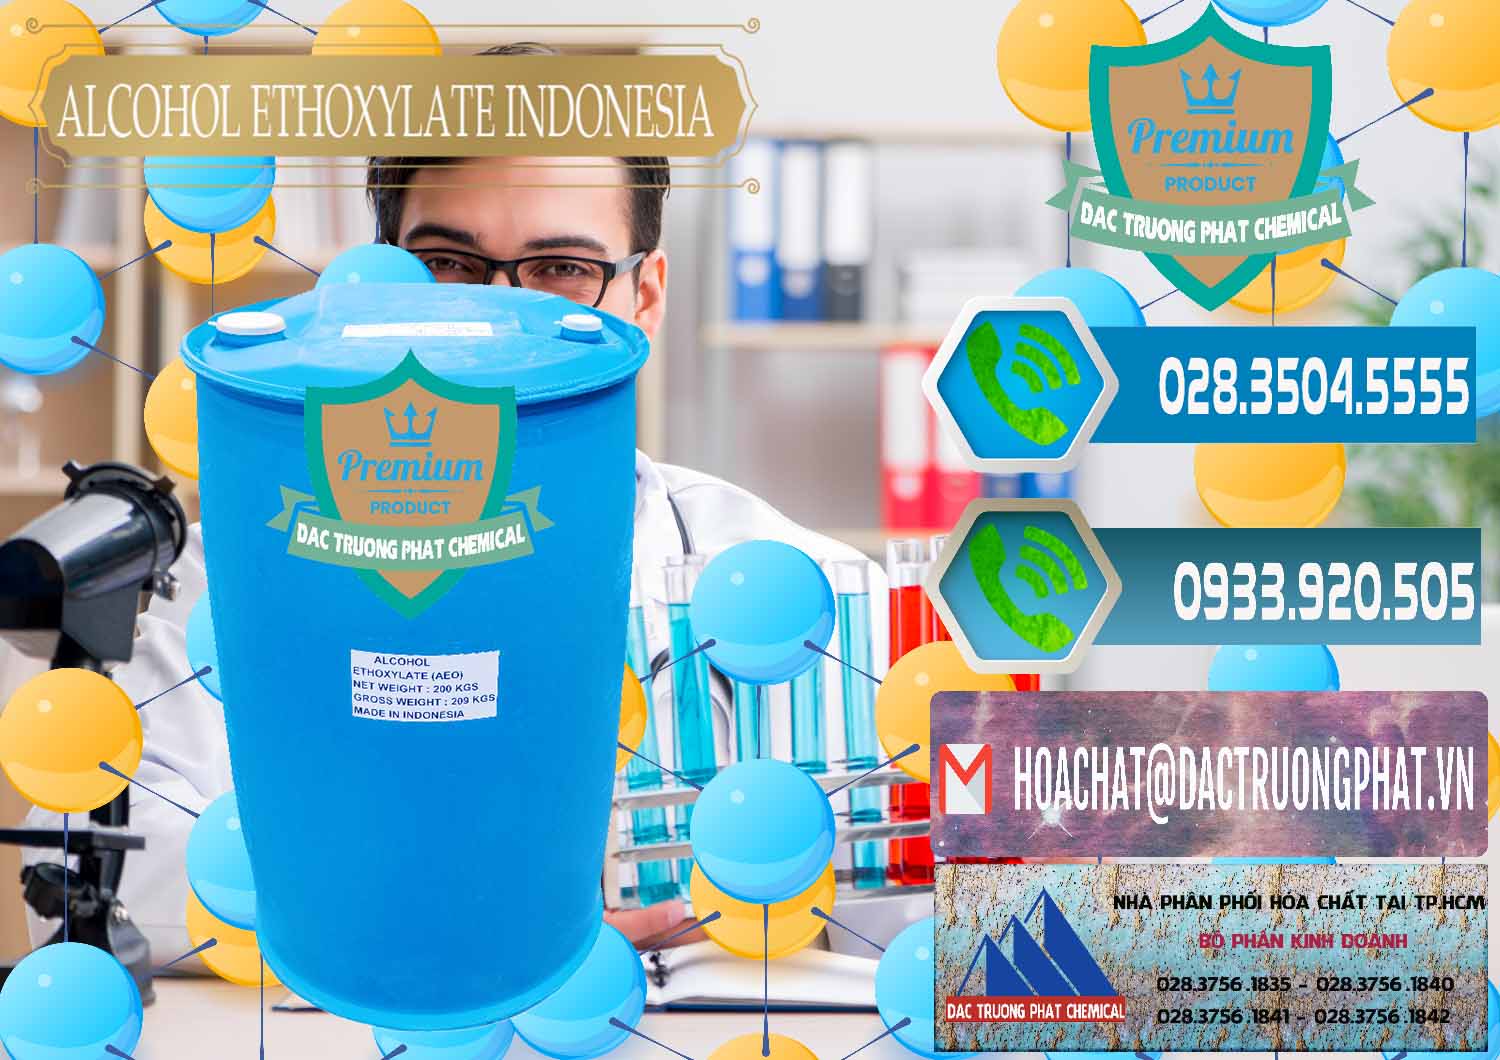 Nơi bán - cung ứng Alcohol Ethoxylate Indonesia - 0308 - Phân phối - cung cấp hóa chất tại TP.HCM - congtyhoachat.net